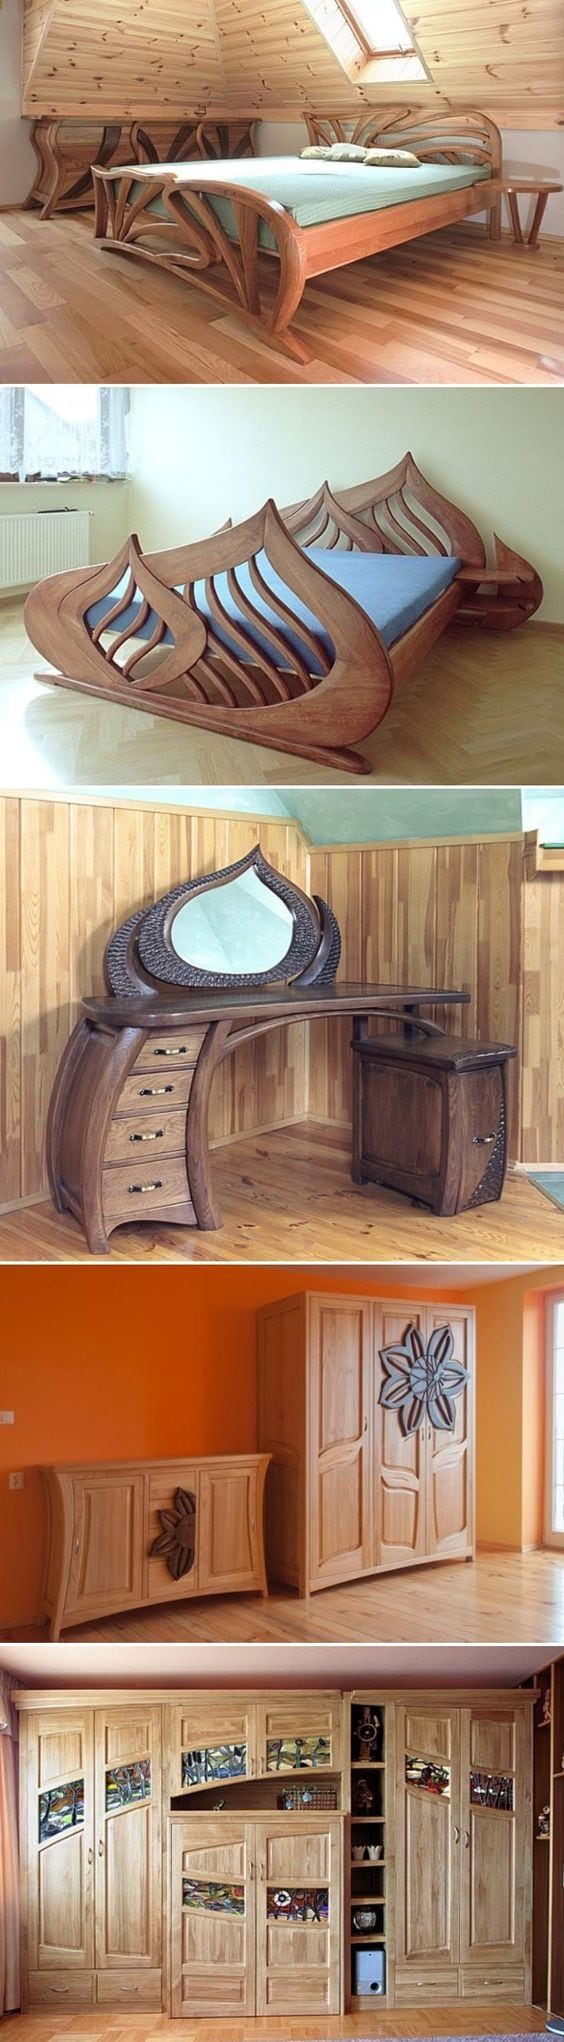 Удивительная мебель от польского плотника